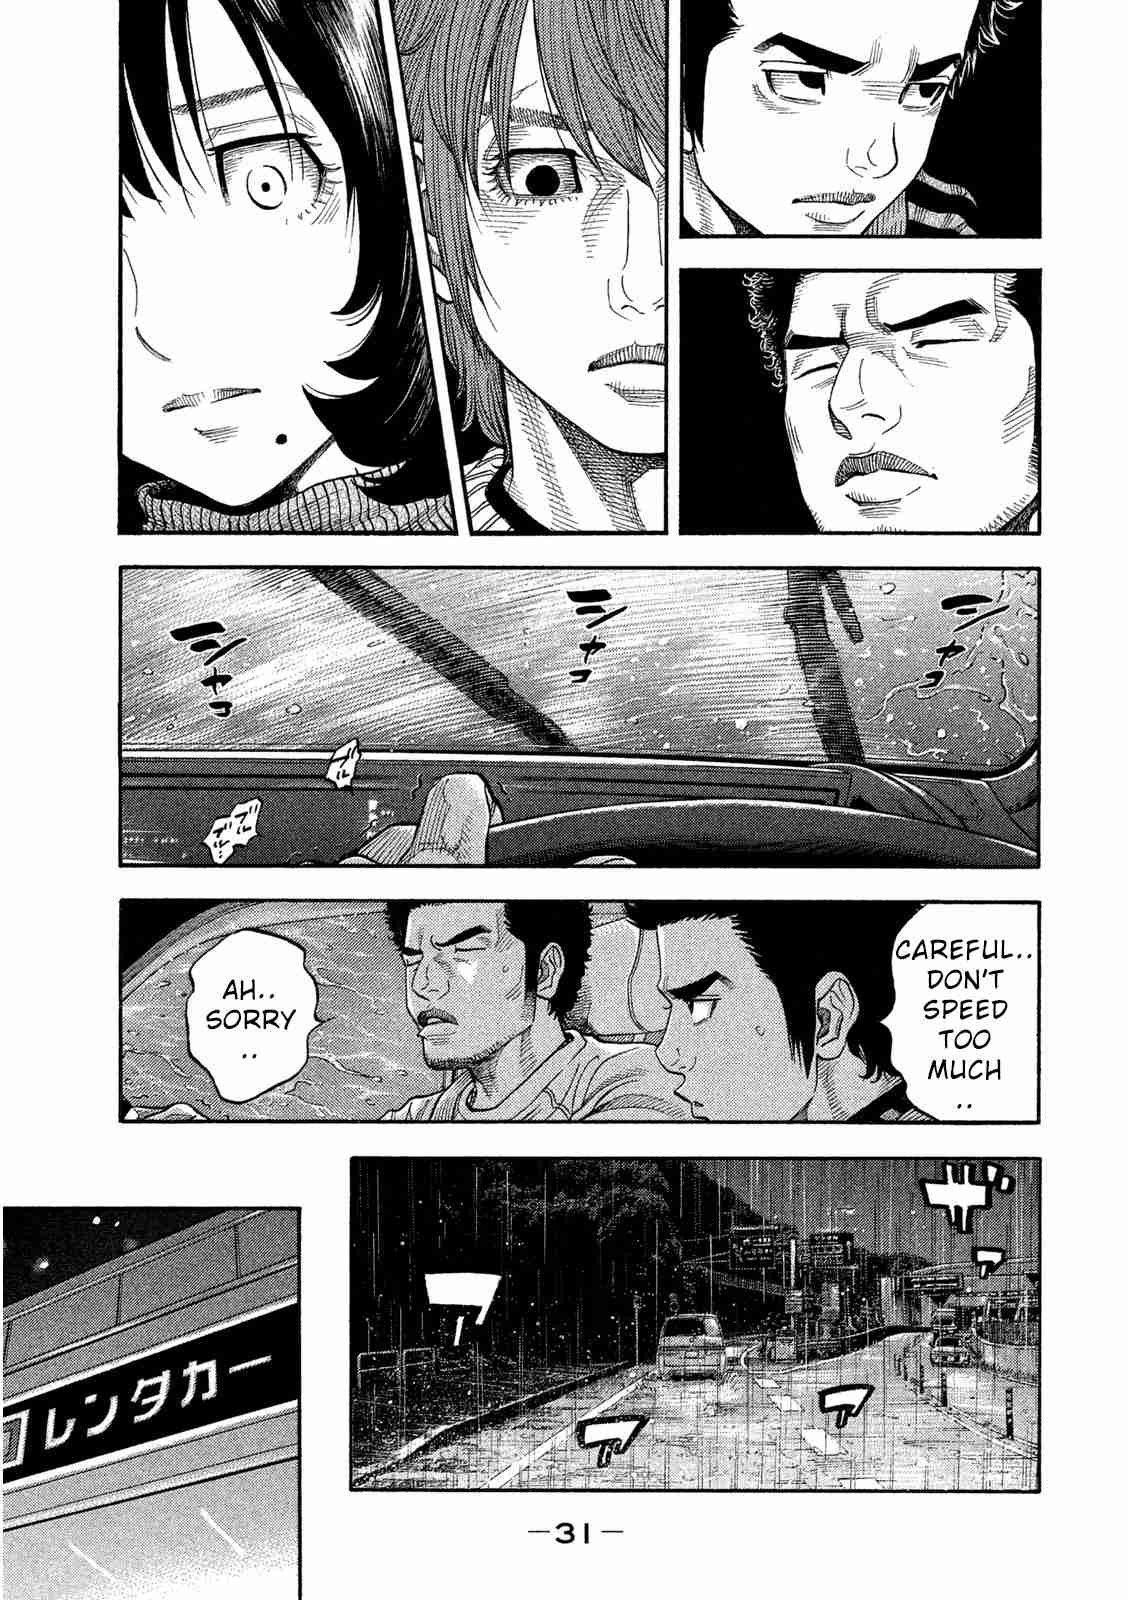 Kudan No Gotoshi Vol. 1 Ch. 1 Tsujimoto Hikaru Part 1